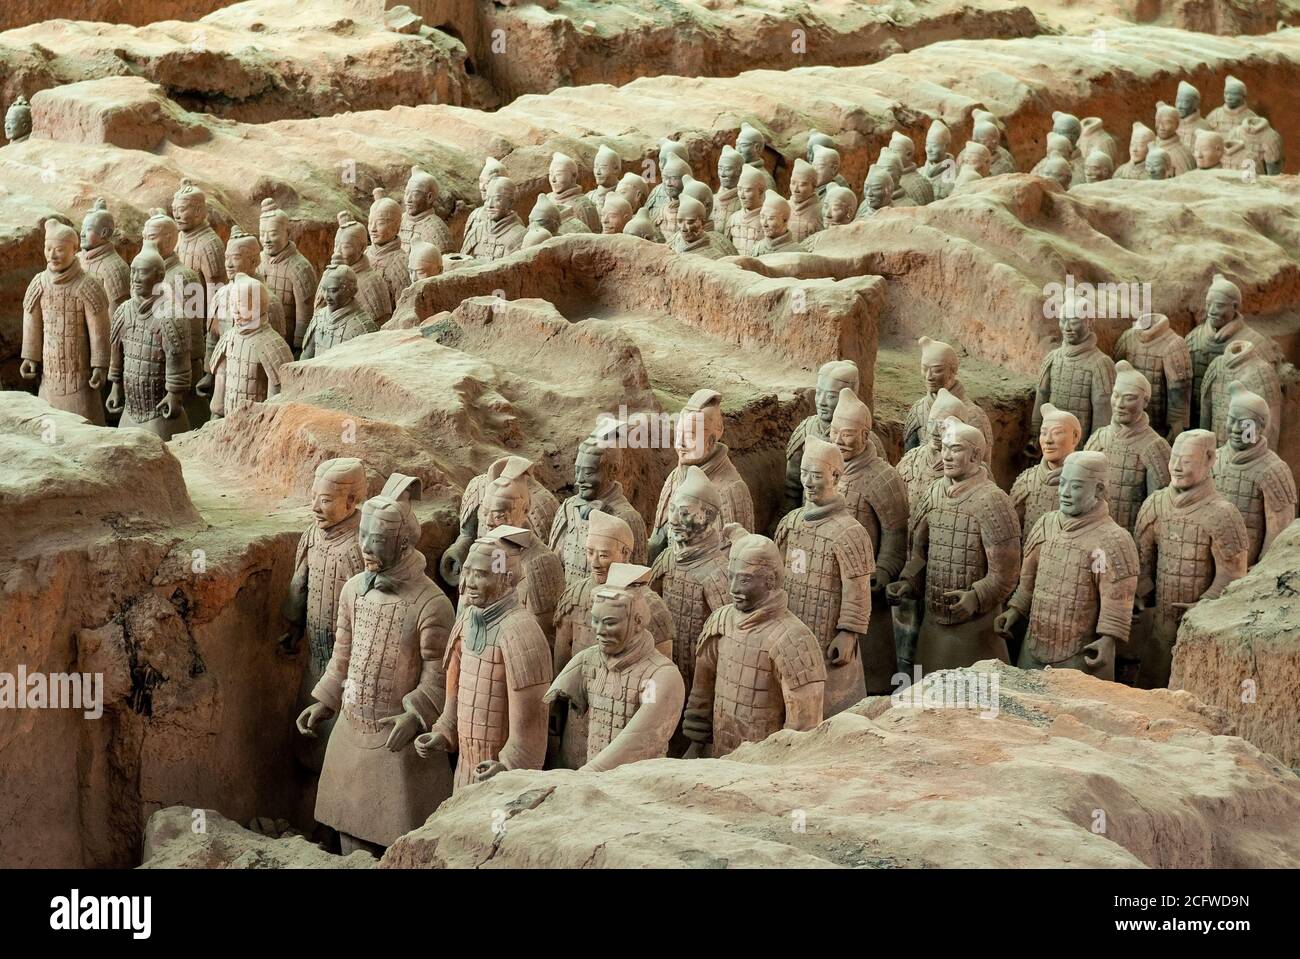 Soldados del ejército de terracota en la tumba del mausoleo de Qin Shi Huang, primer emperador de China, Xian, provincia de Shaanxi, China. Foto de stock